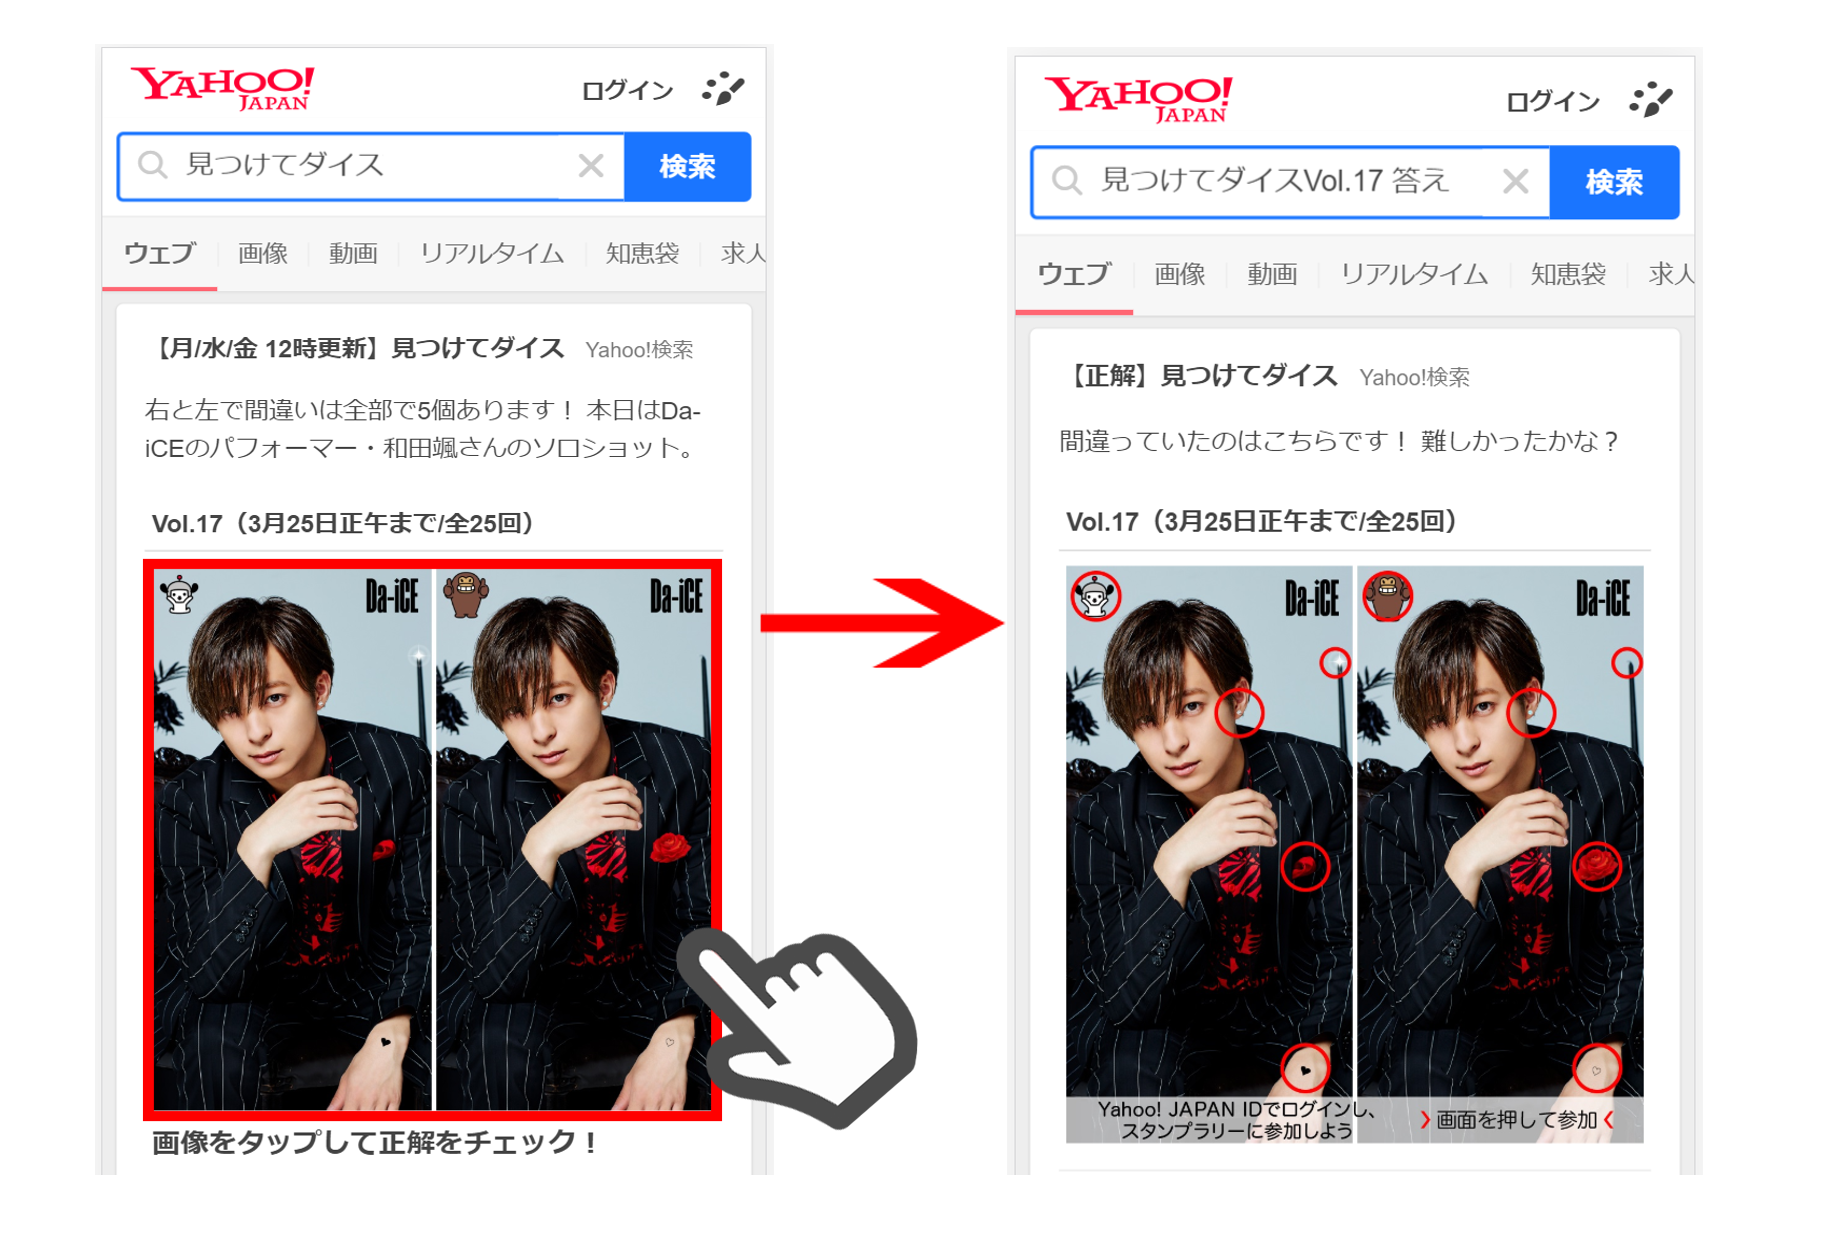 Q A 見つけてダイス ってなに 遊び方は 何か特典があるの 調べてみました Yahoo Japan